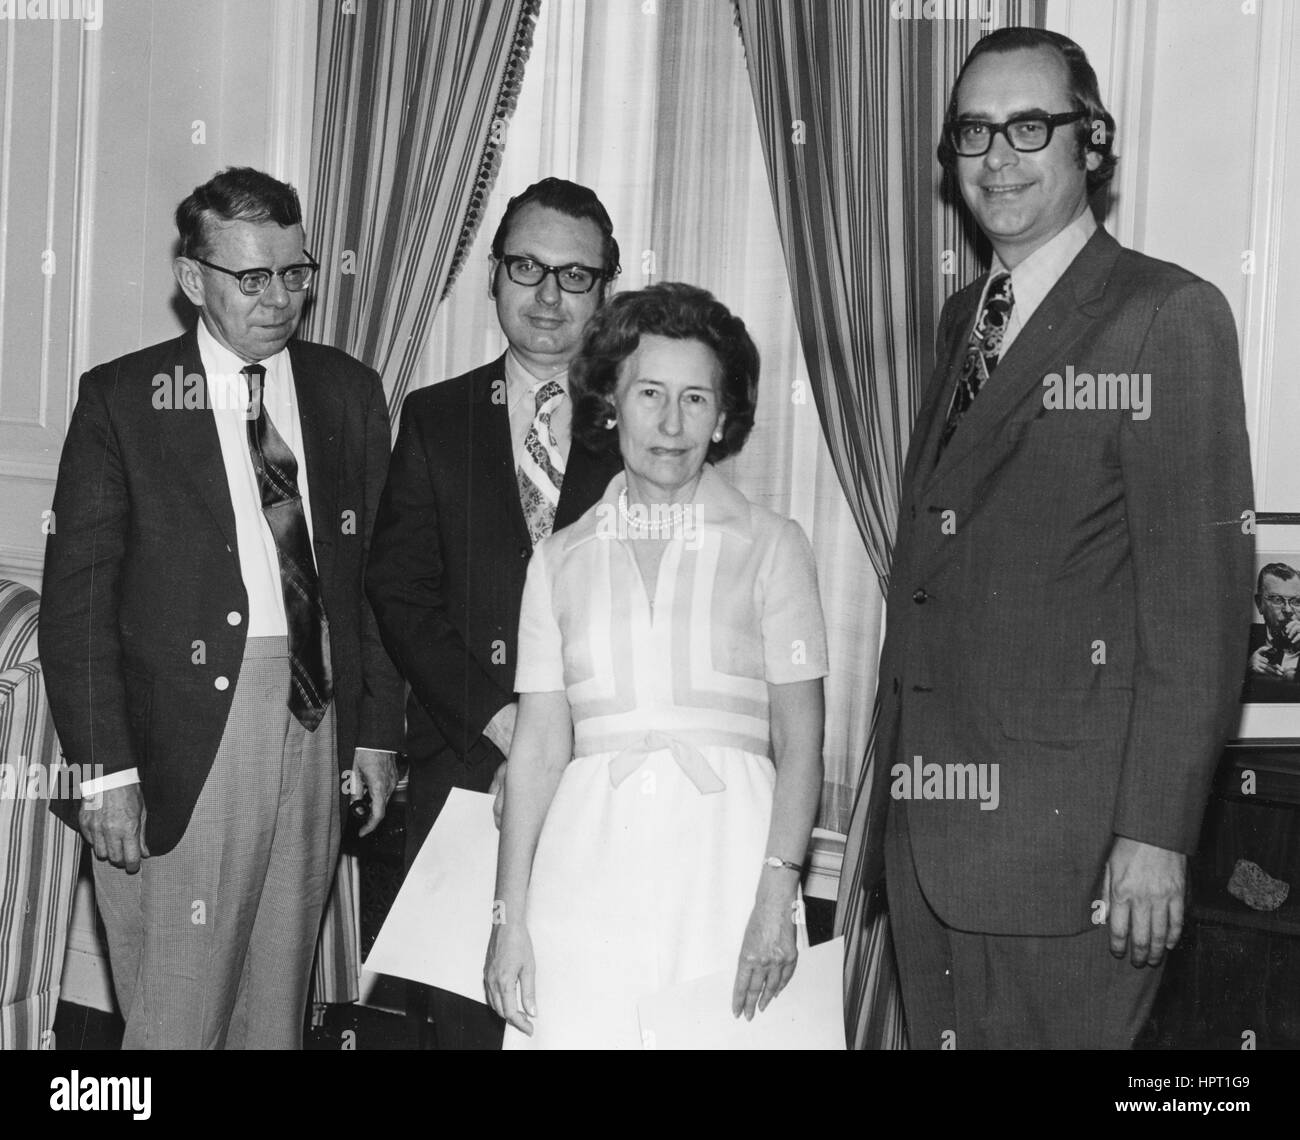 (Von links nach rechts): Historiker Dr. Edward G. Campbell, Robert M. Kvasnicka und Jane F. Smith stehen mit Archivar James B. Rhoads während der lobenswerten Service Award Zeremonie, 7. Juli 1972. Stockfoto